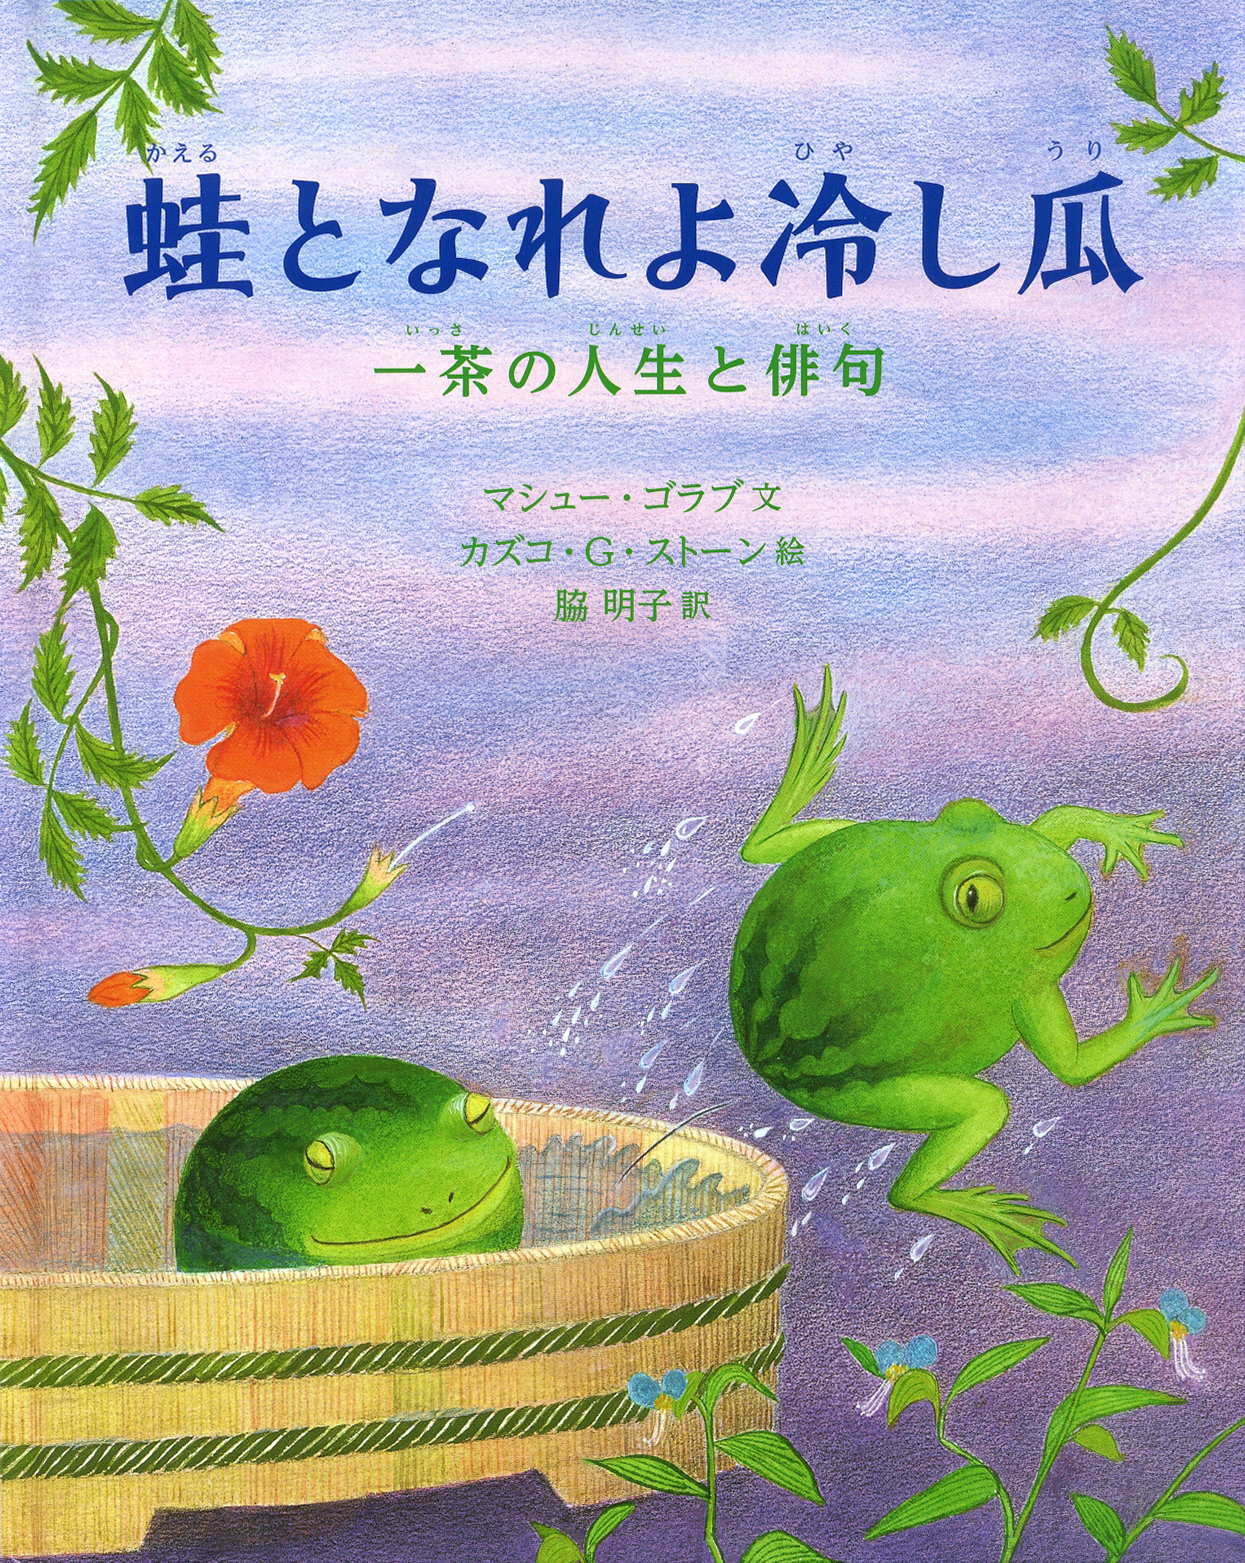 蛙となれよ冷し瓜の商品画像